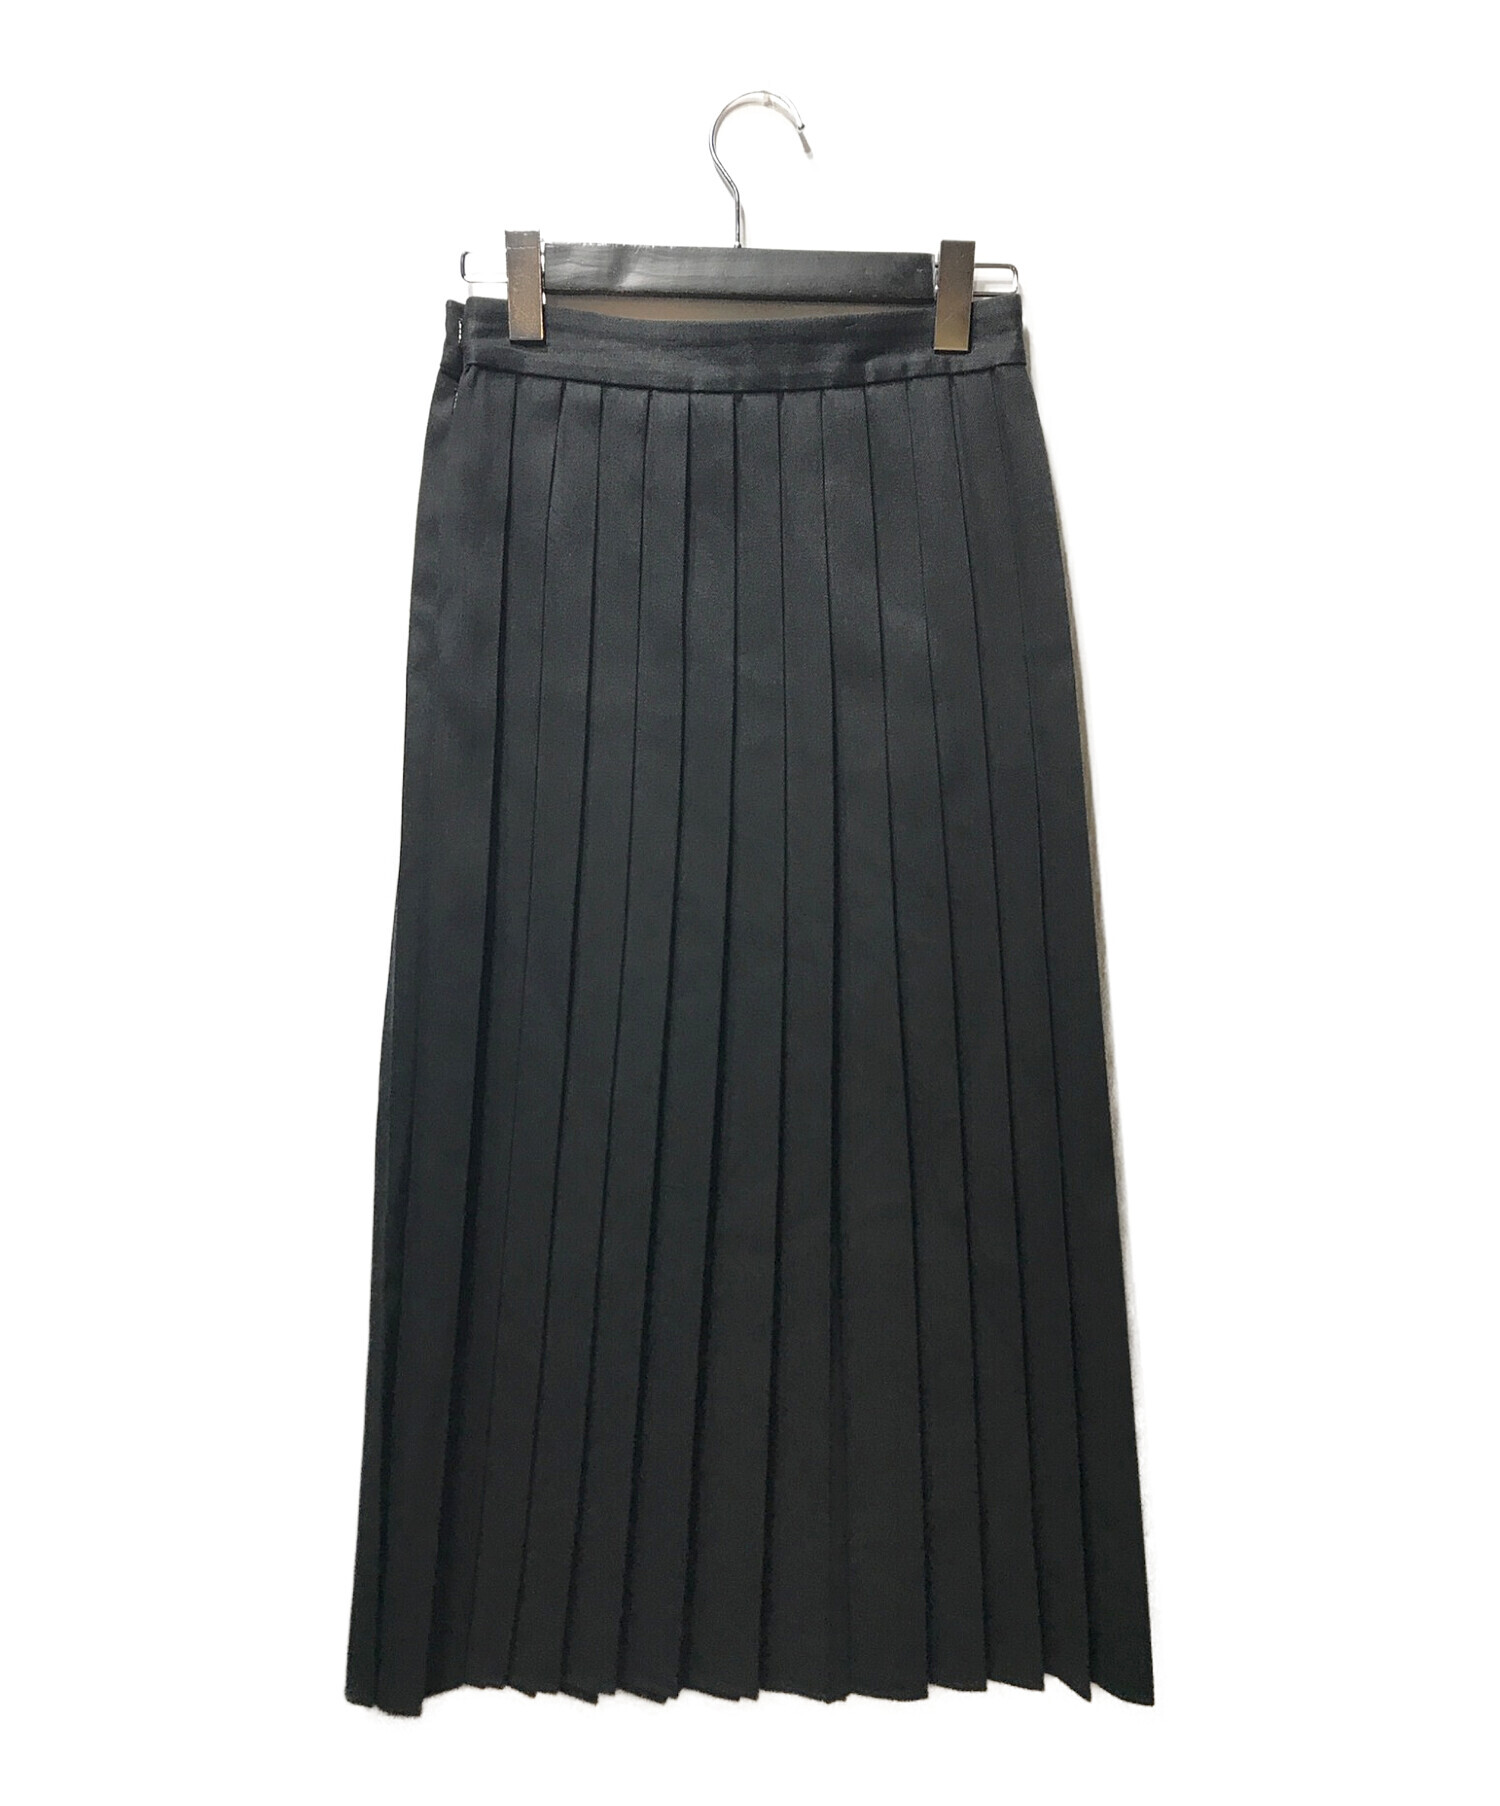 STEVEN ALAN (スティーブンアラン) コットンプリーツスカート ブラック サイズ:S